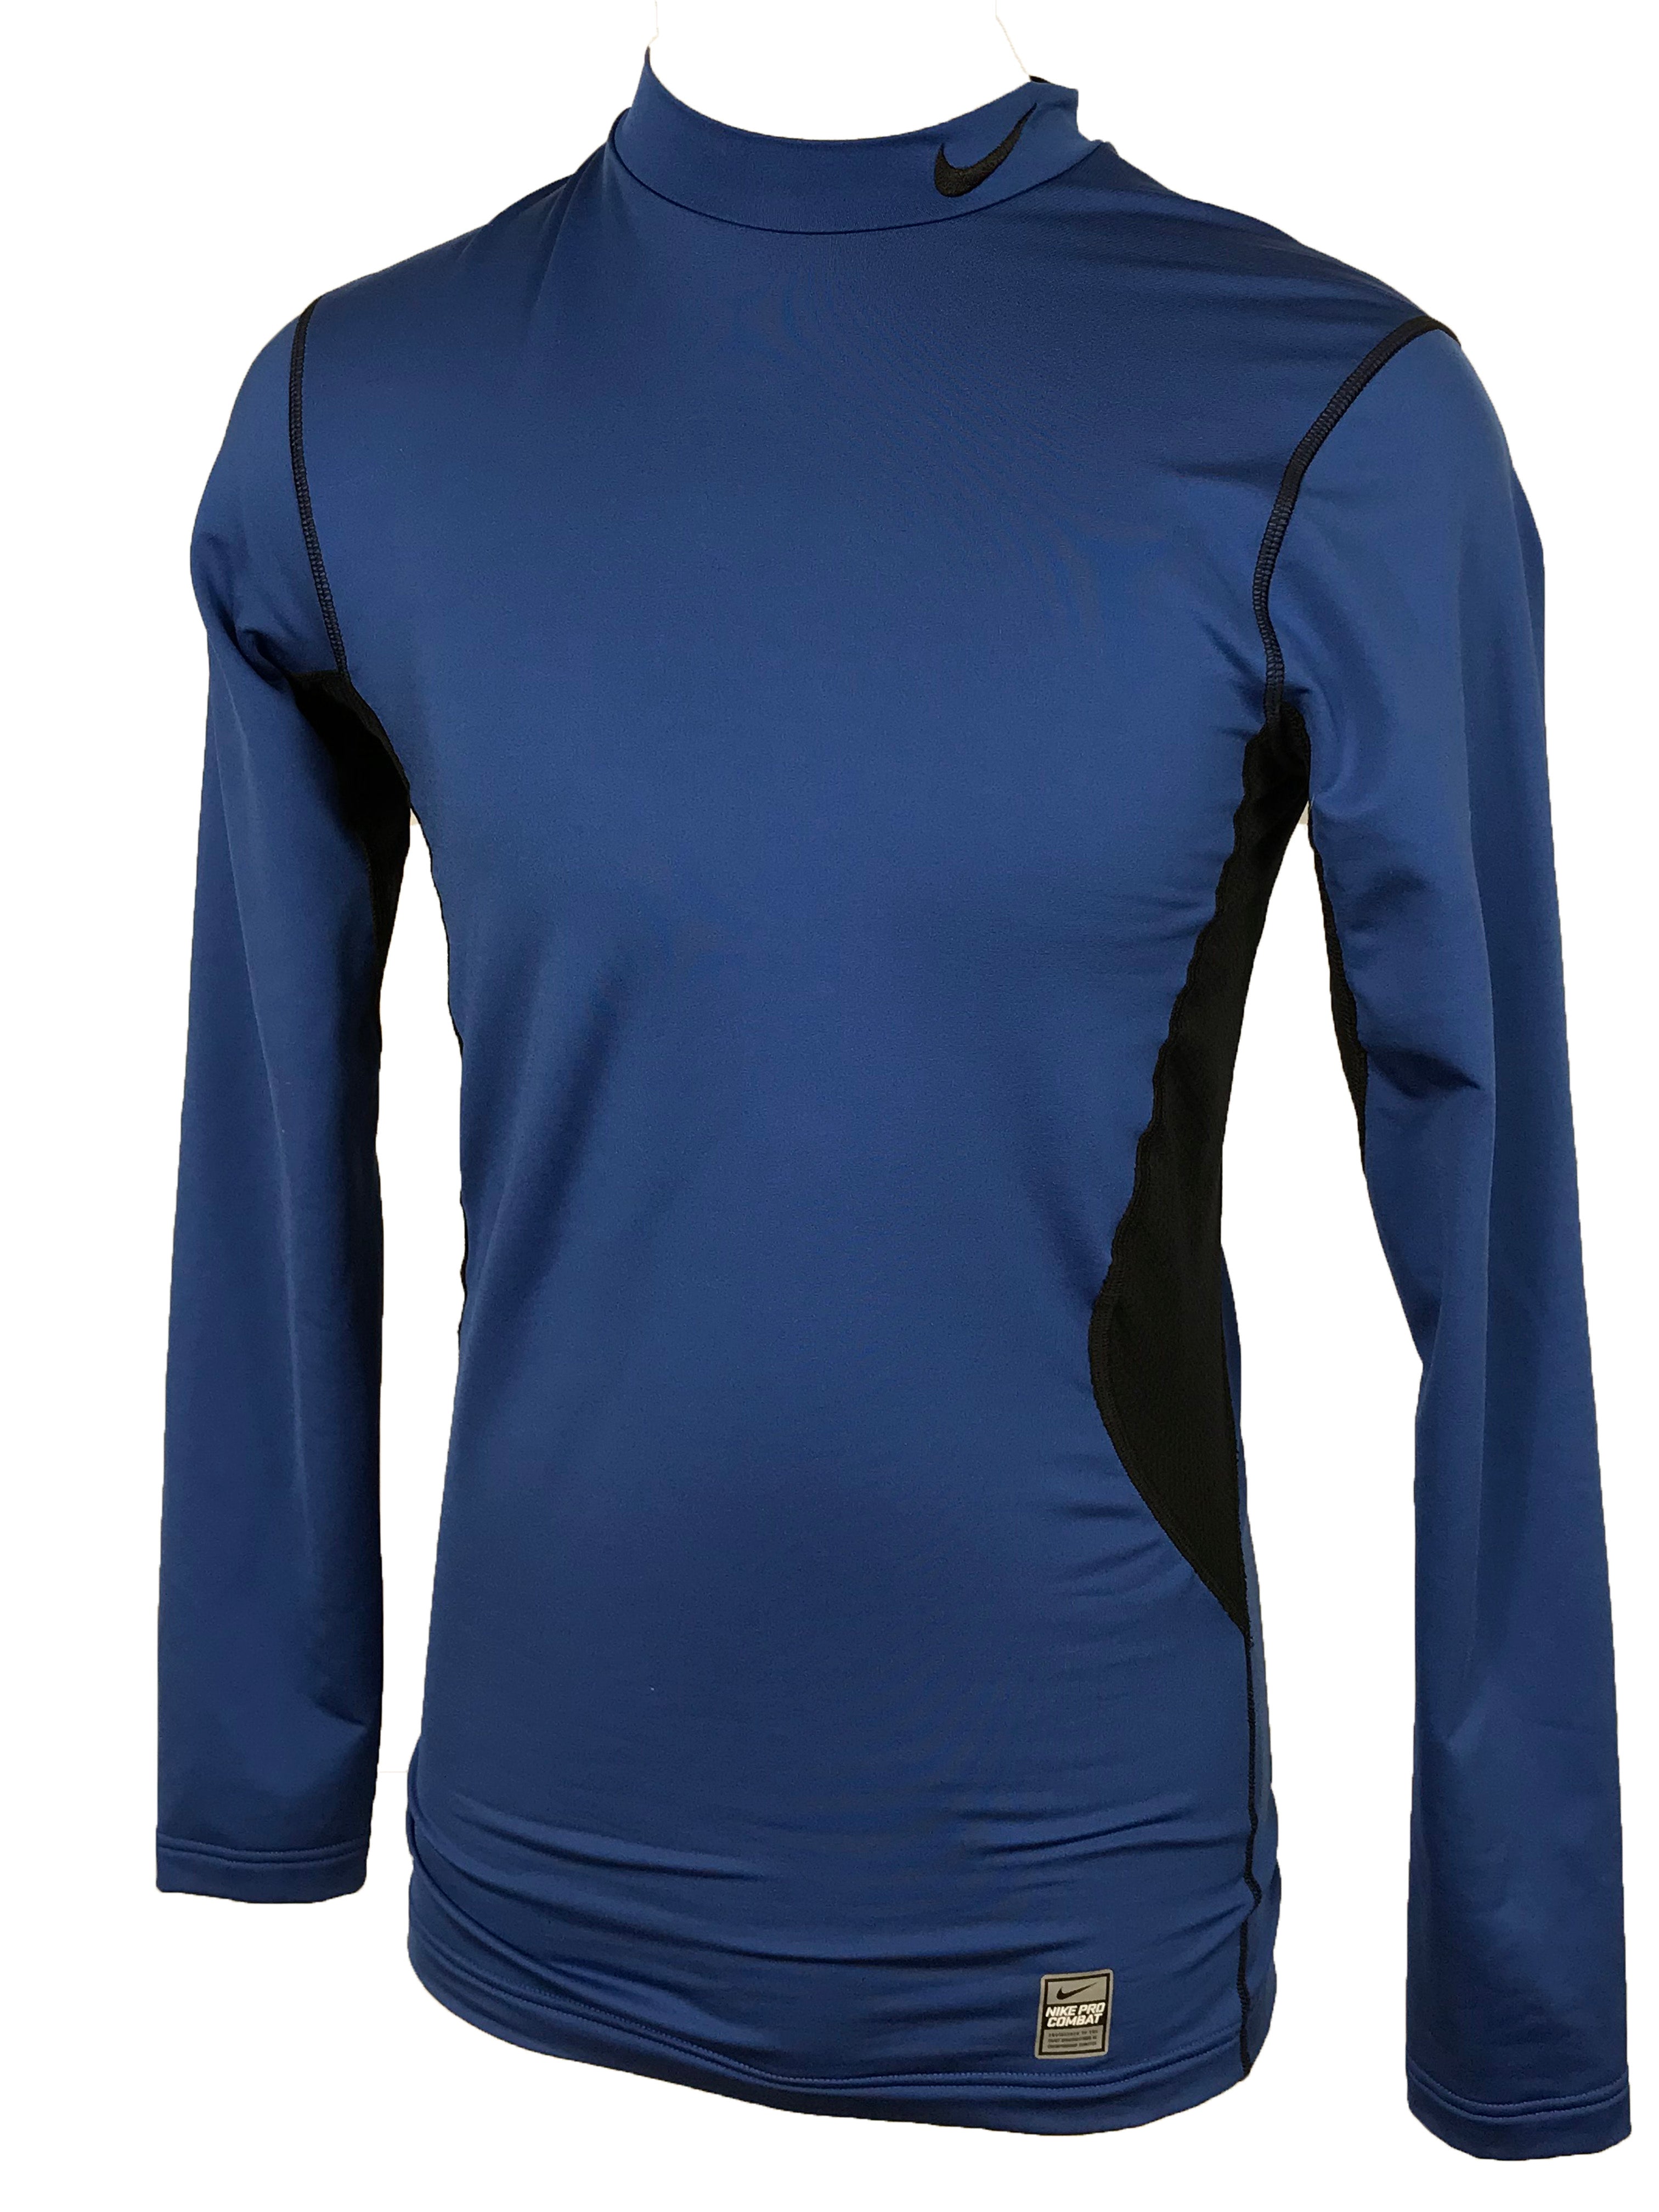 Nike Blue Pro Combat Dri-Fit Long Sleeve Shirt Men's Size Small